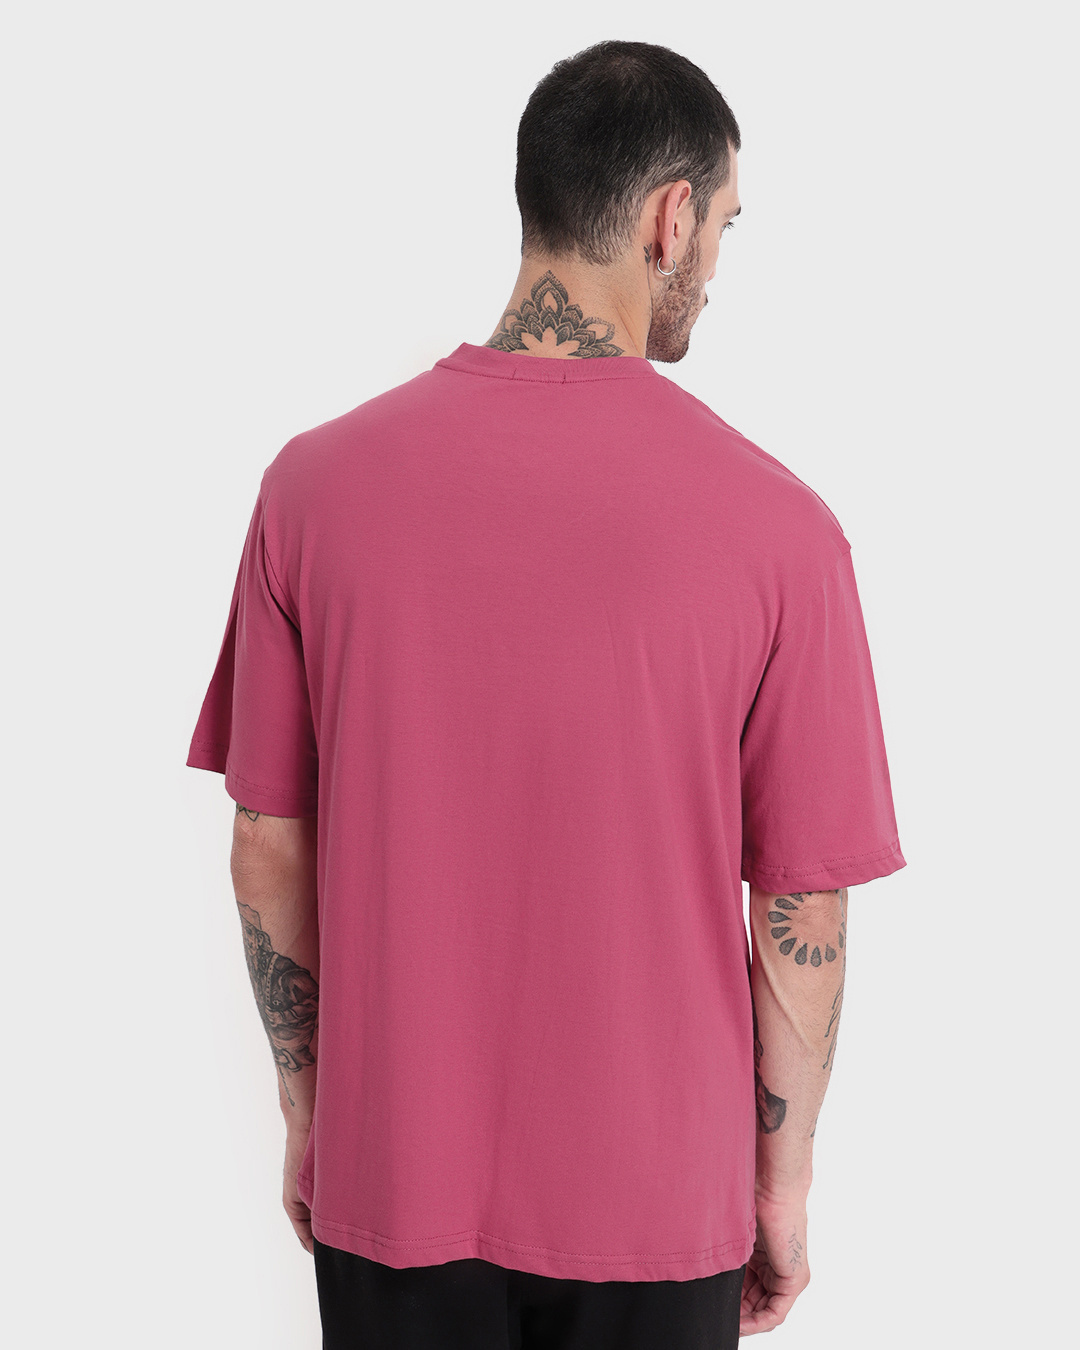 Buy Men's Pink Chicago Typography Oversized T-shirt Online at Bewakoof